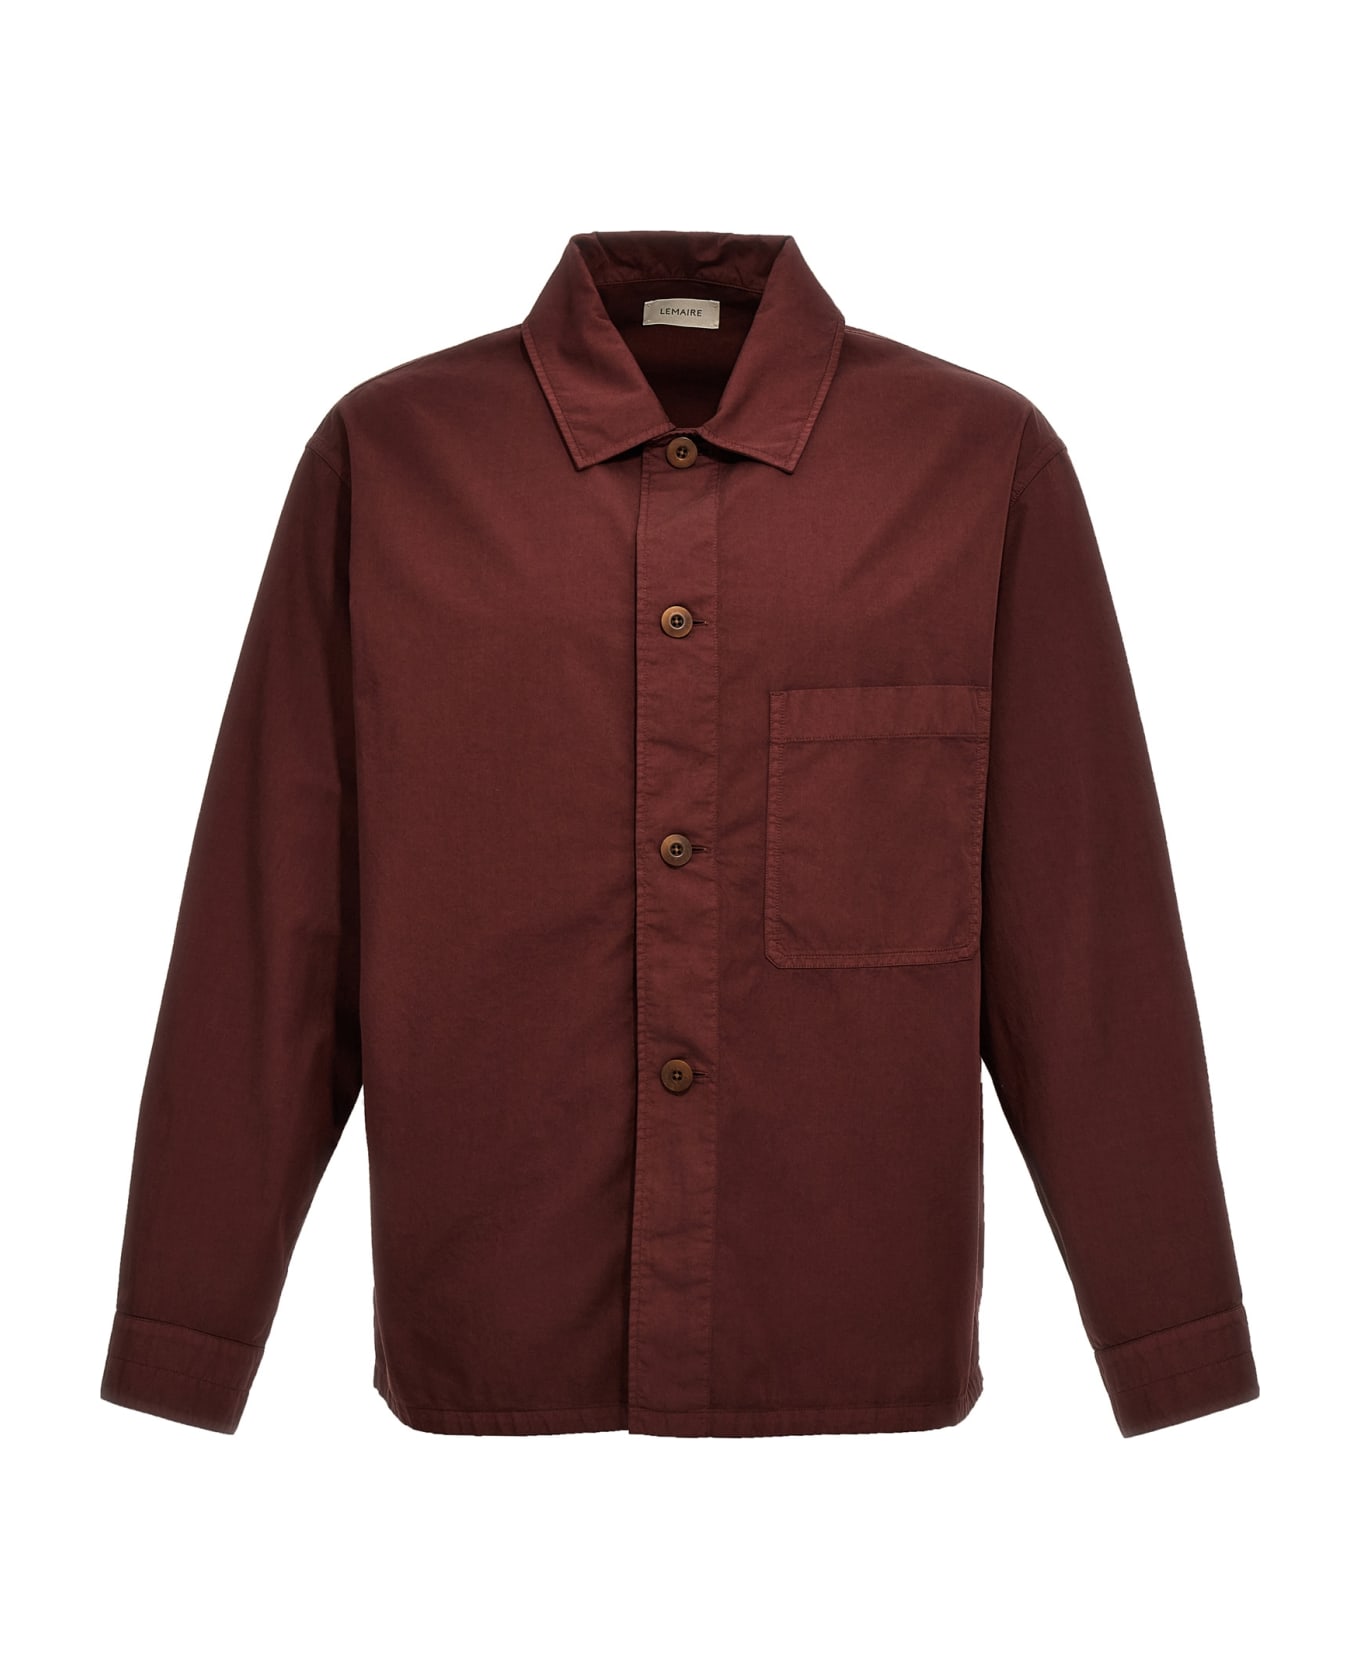 Lemaire 'ls Pyjama' Shirt - Brown